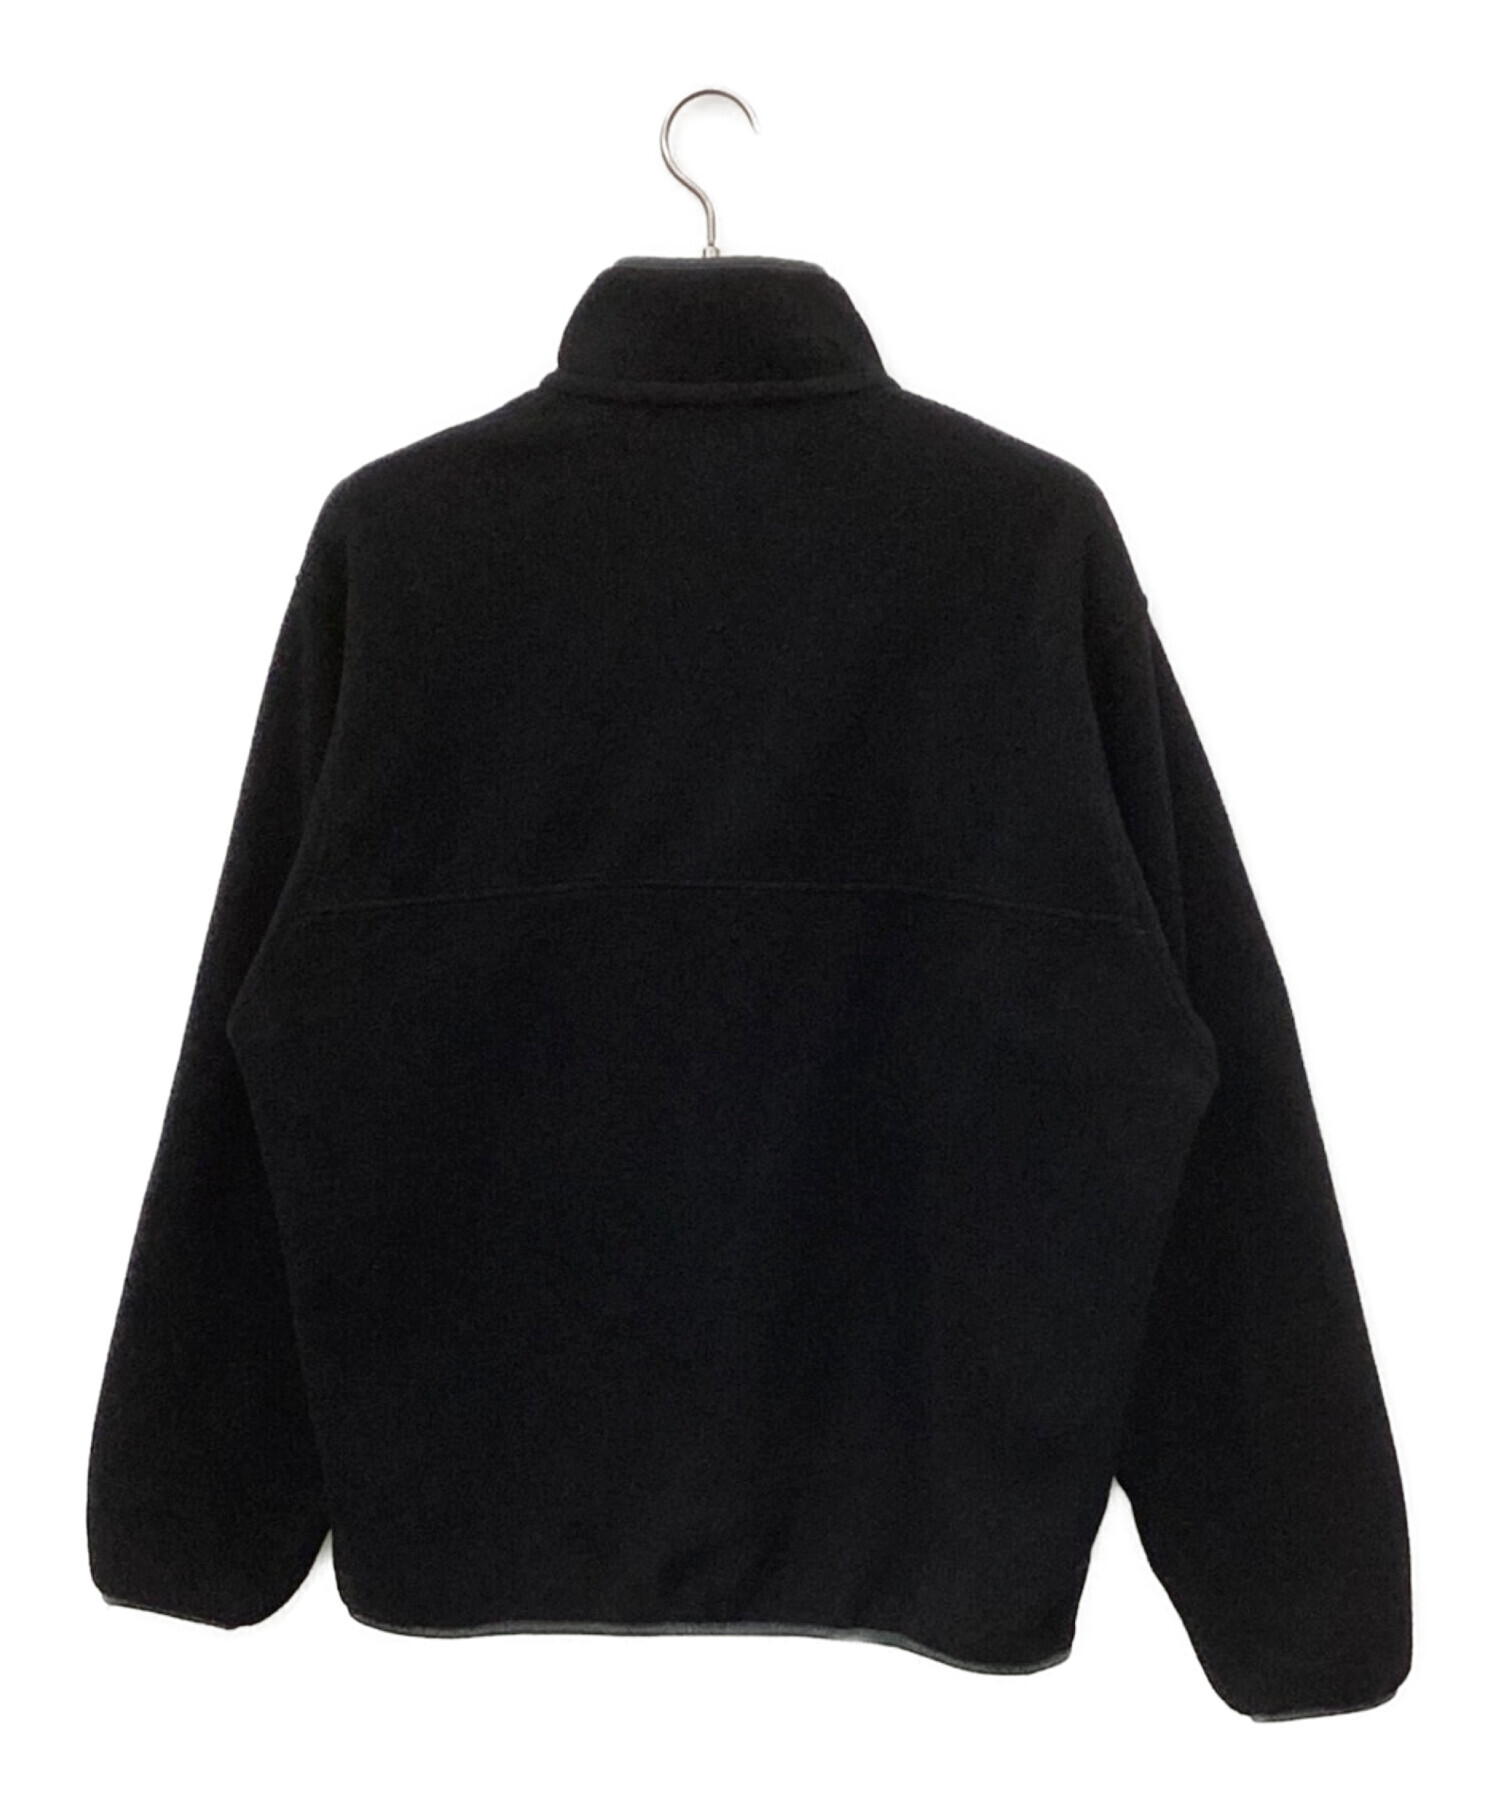 Patagonia (パタゴニア) フリースジャケット ブラック×グレー サイズ:M